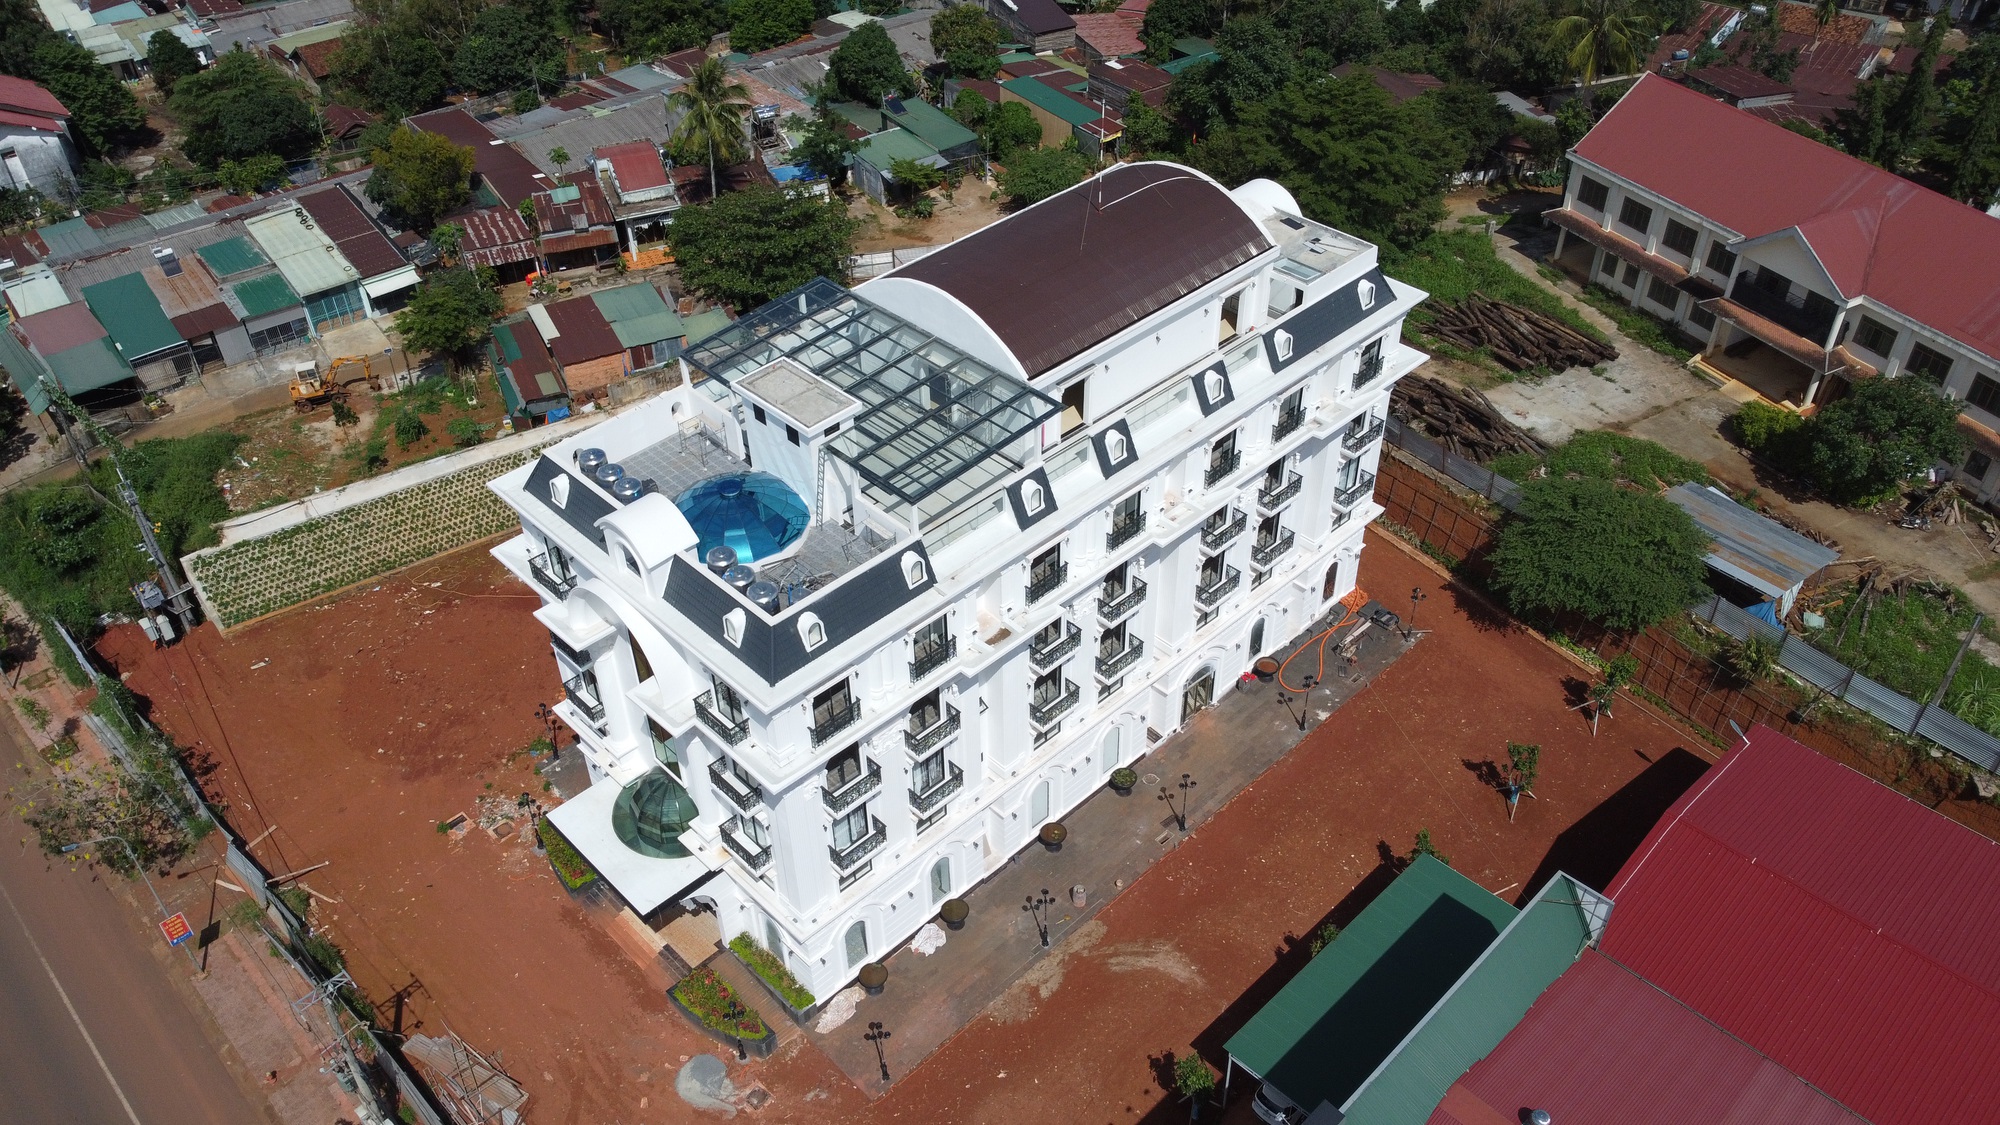 Cận cảnh tòa nhà trắng ở Đắk Nông vi phạm xây dựng nhiều năm chưa được xử lý - Ảnh 3.